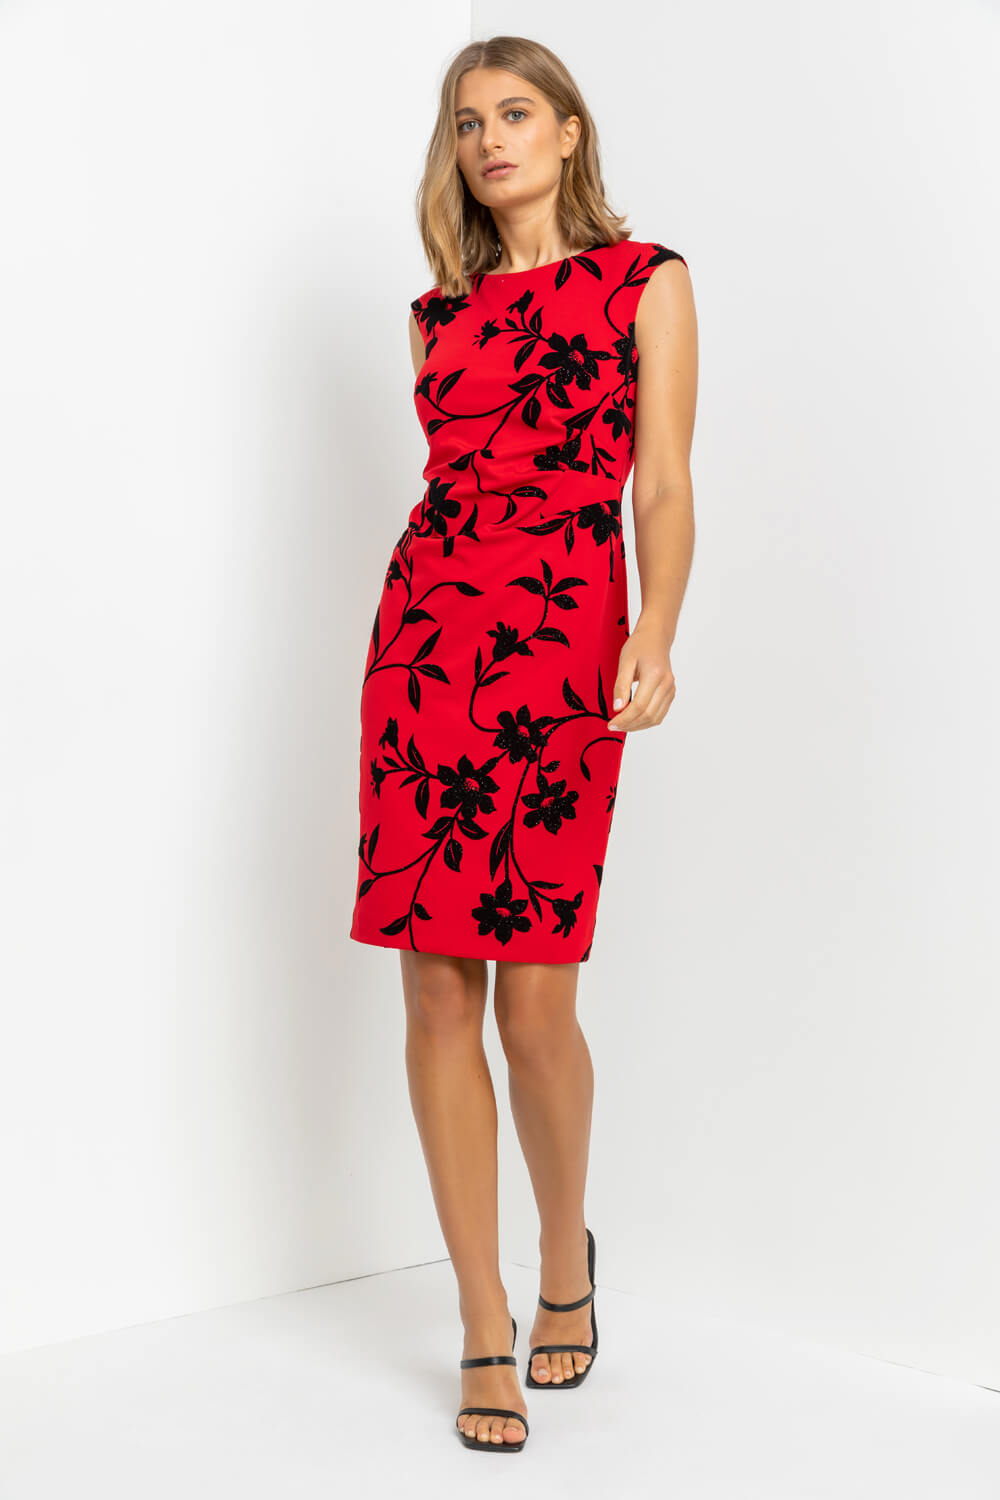 Red Floral Flocked Shimmer Shift Dress, Image 3 of 4